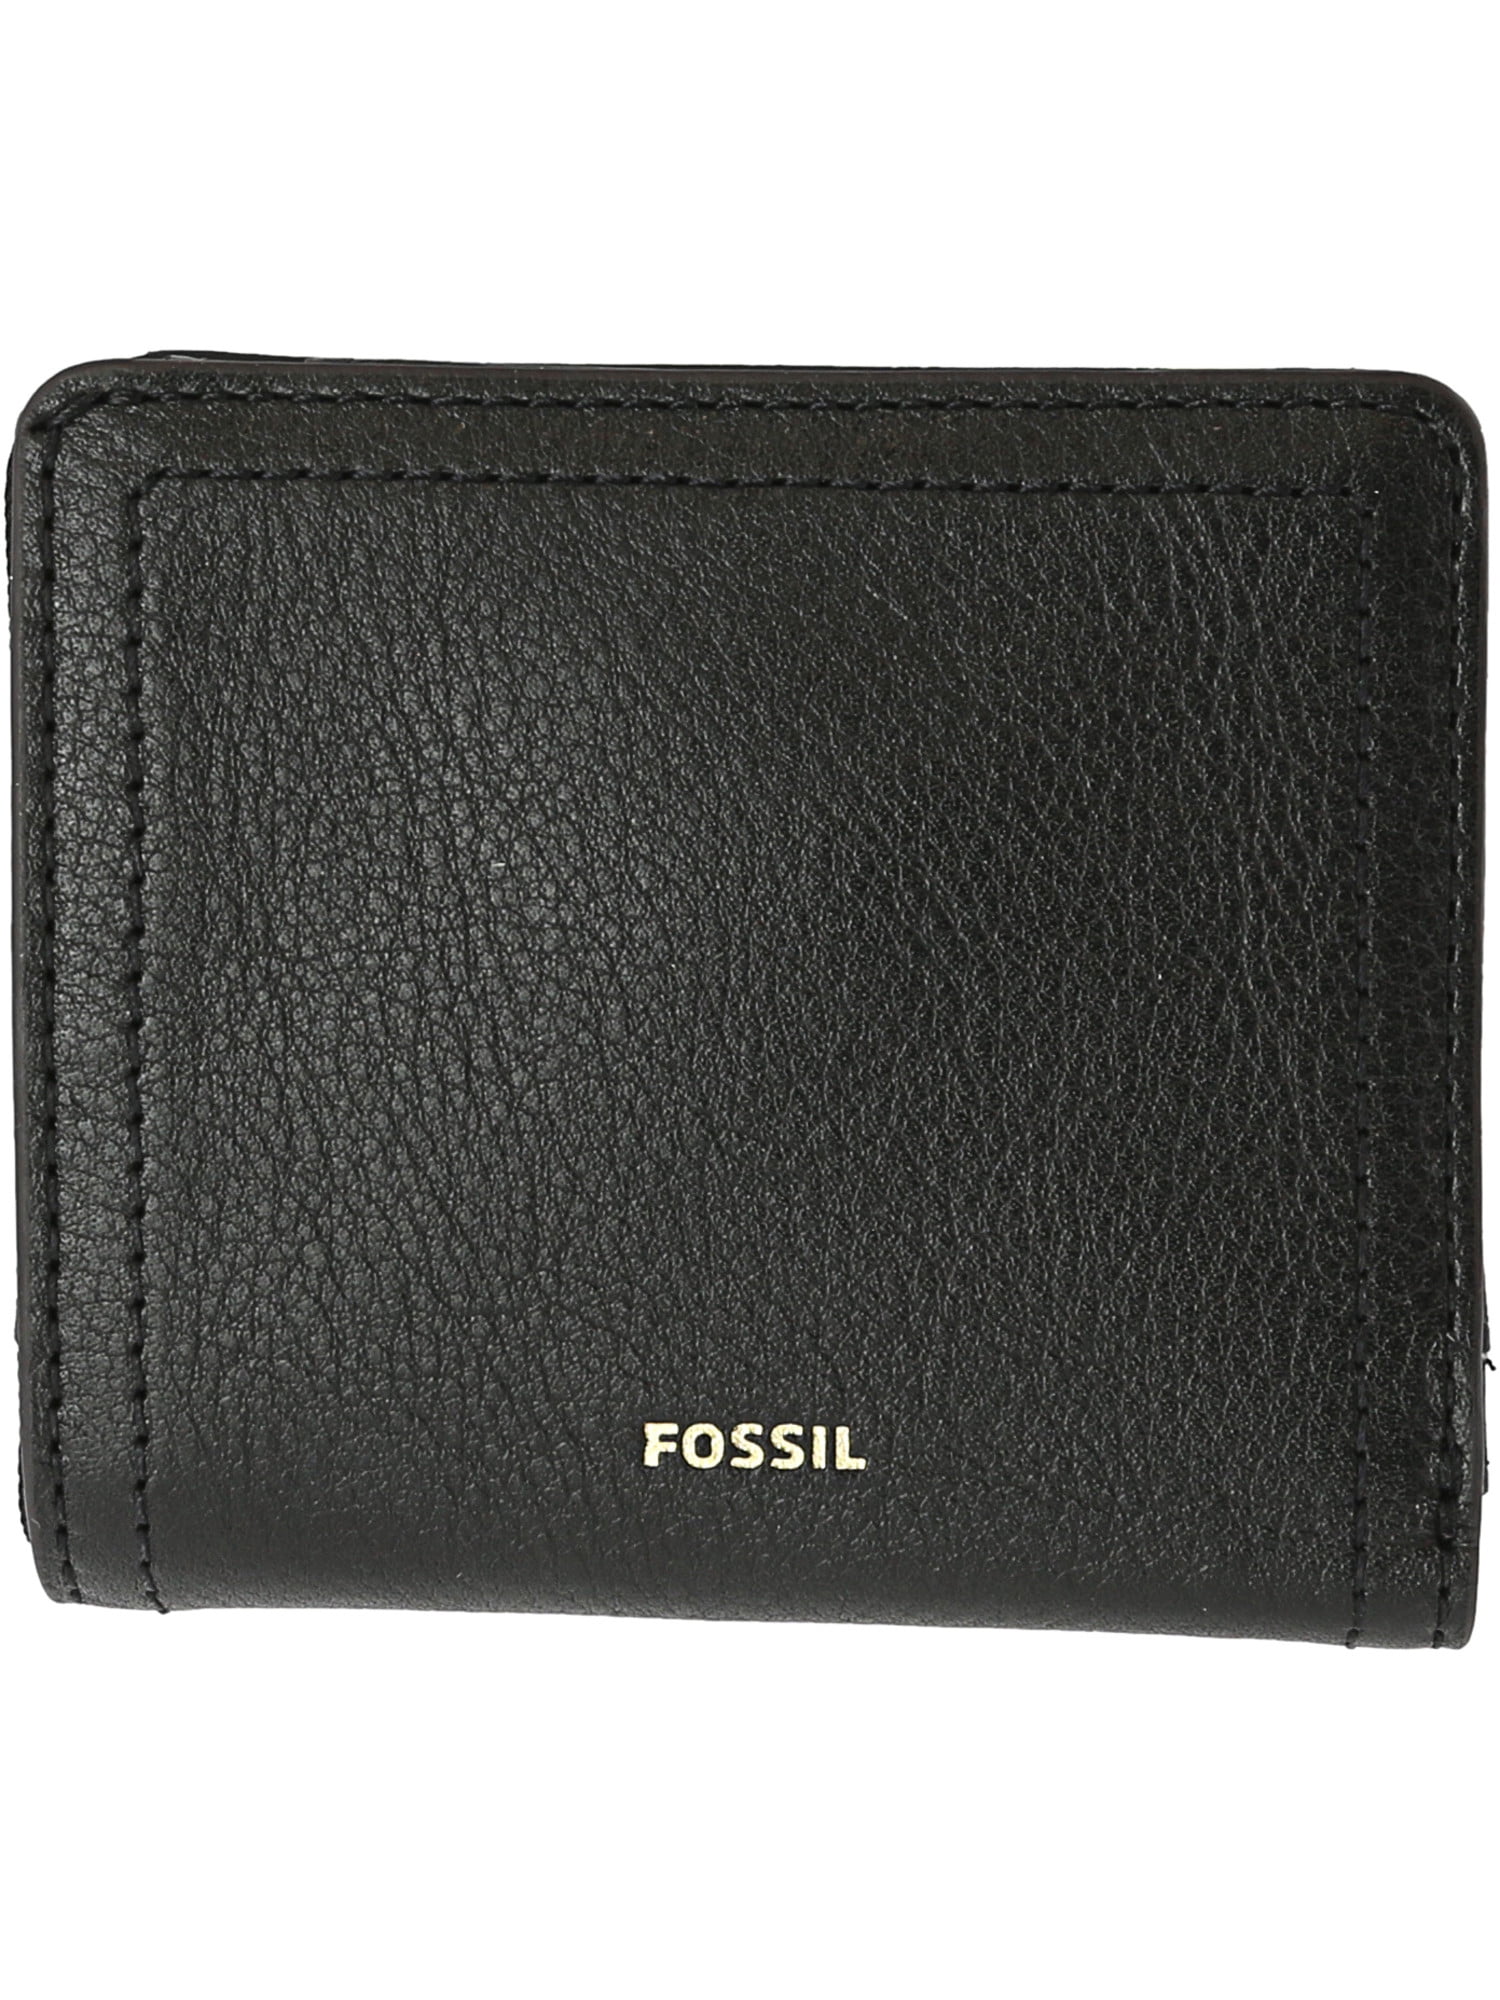 Fossil - Fossil Men's Small Logan Rfid Bifold Wallet - Black - Walmart.com